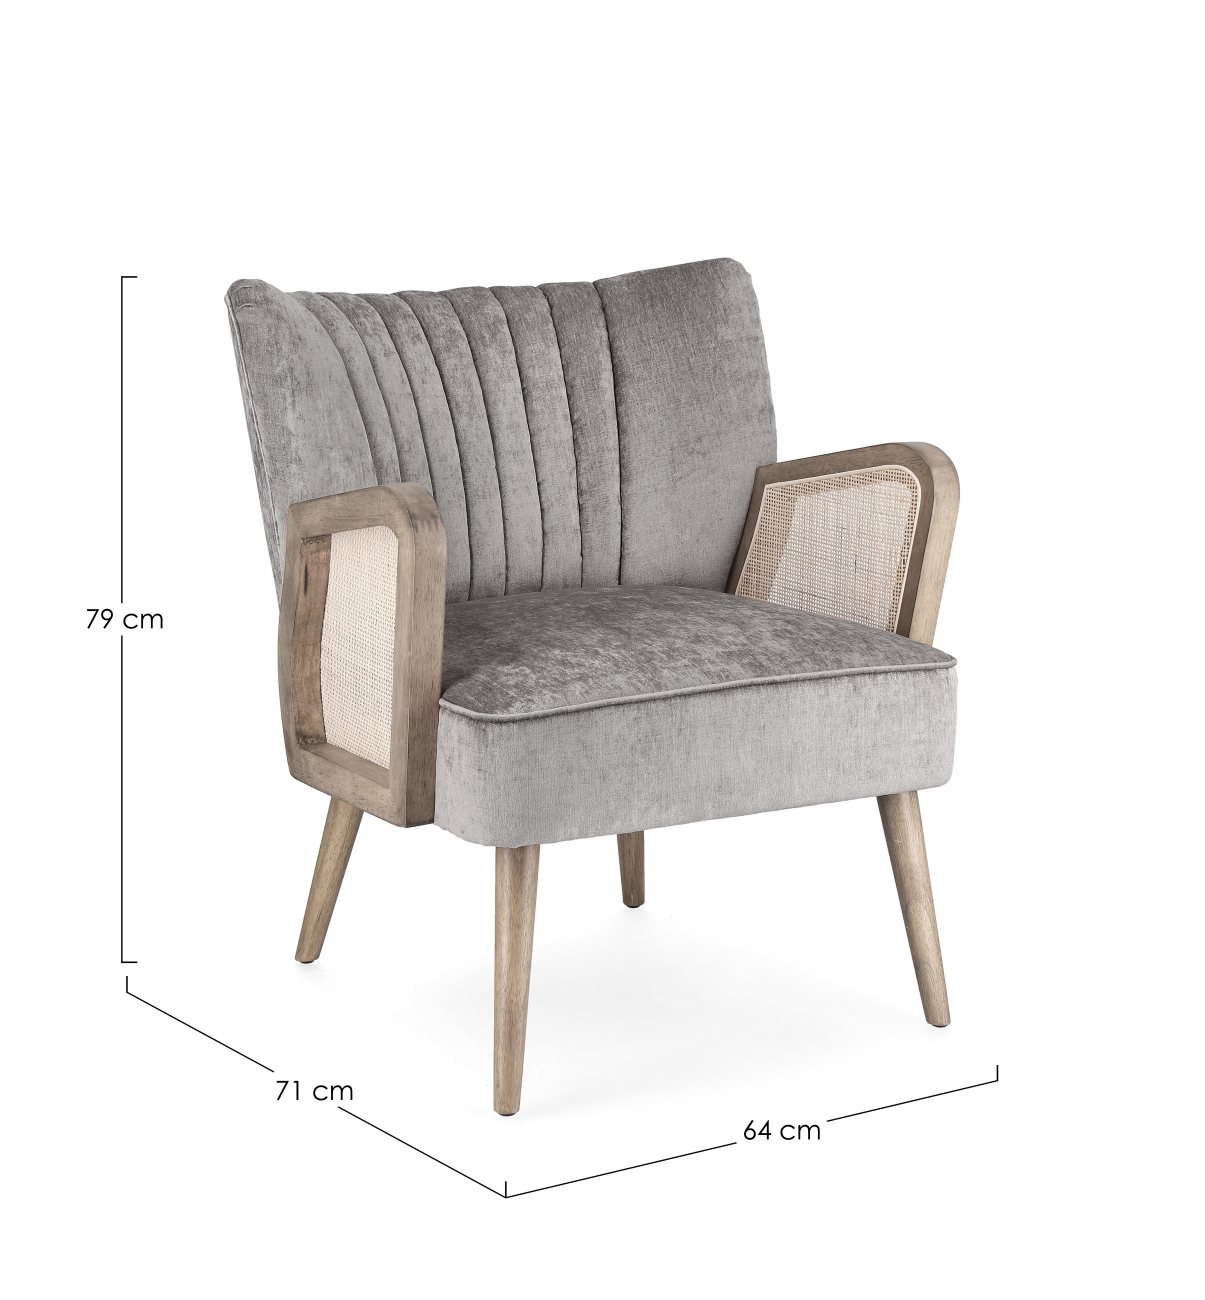 Der Sessel Virna überzeugt mit seinem modernen Stil. Gefertigt wurde er aus einem Stoff-Bezug, welcher einen grauen Farbton besitzt. Das Gestell ist aus Kautschukholz und hat eine braune Farbe. Der Sessel verfügt über eine Armlehne.